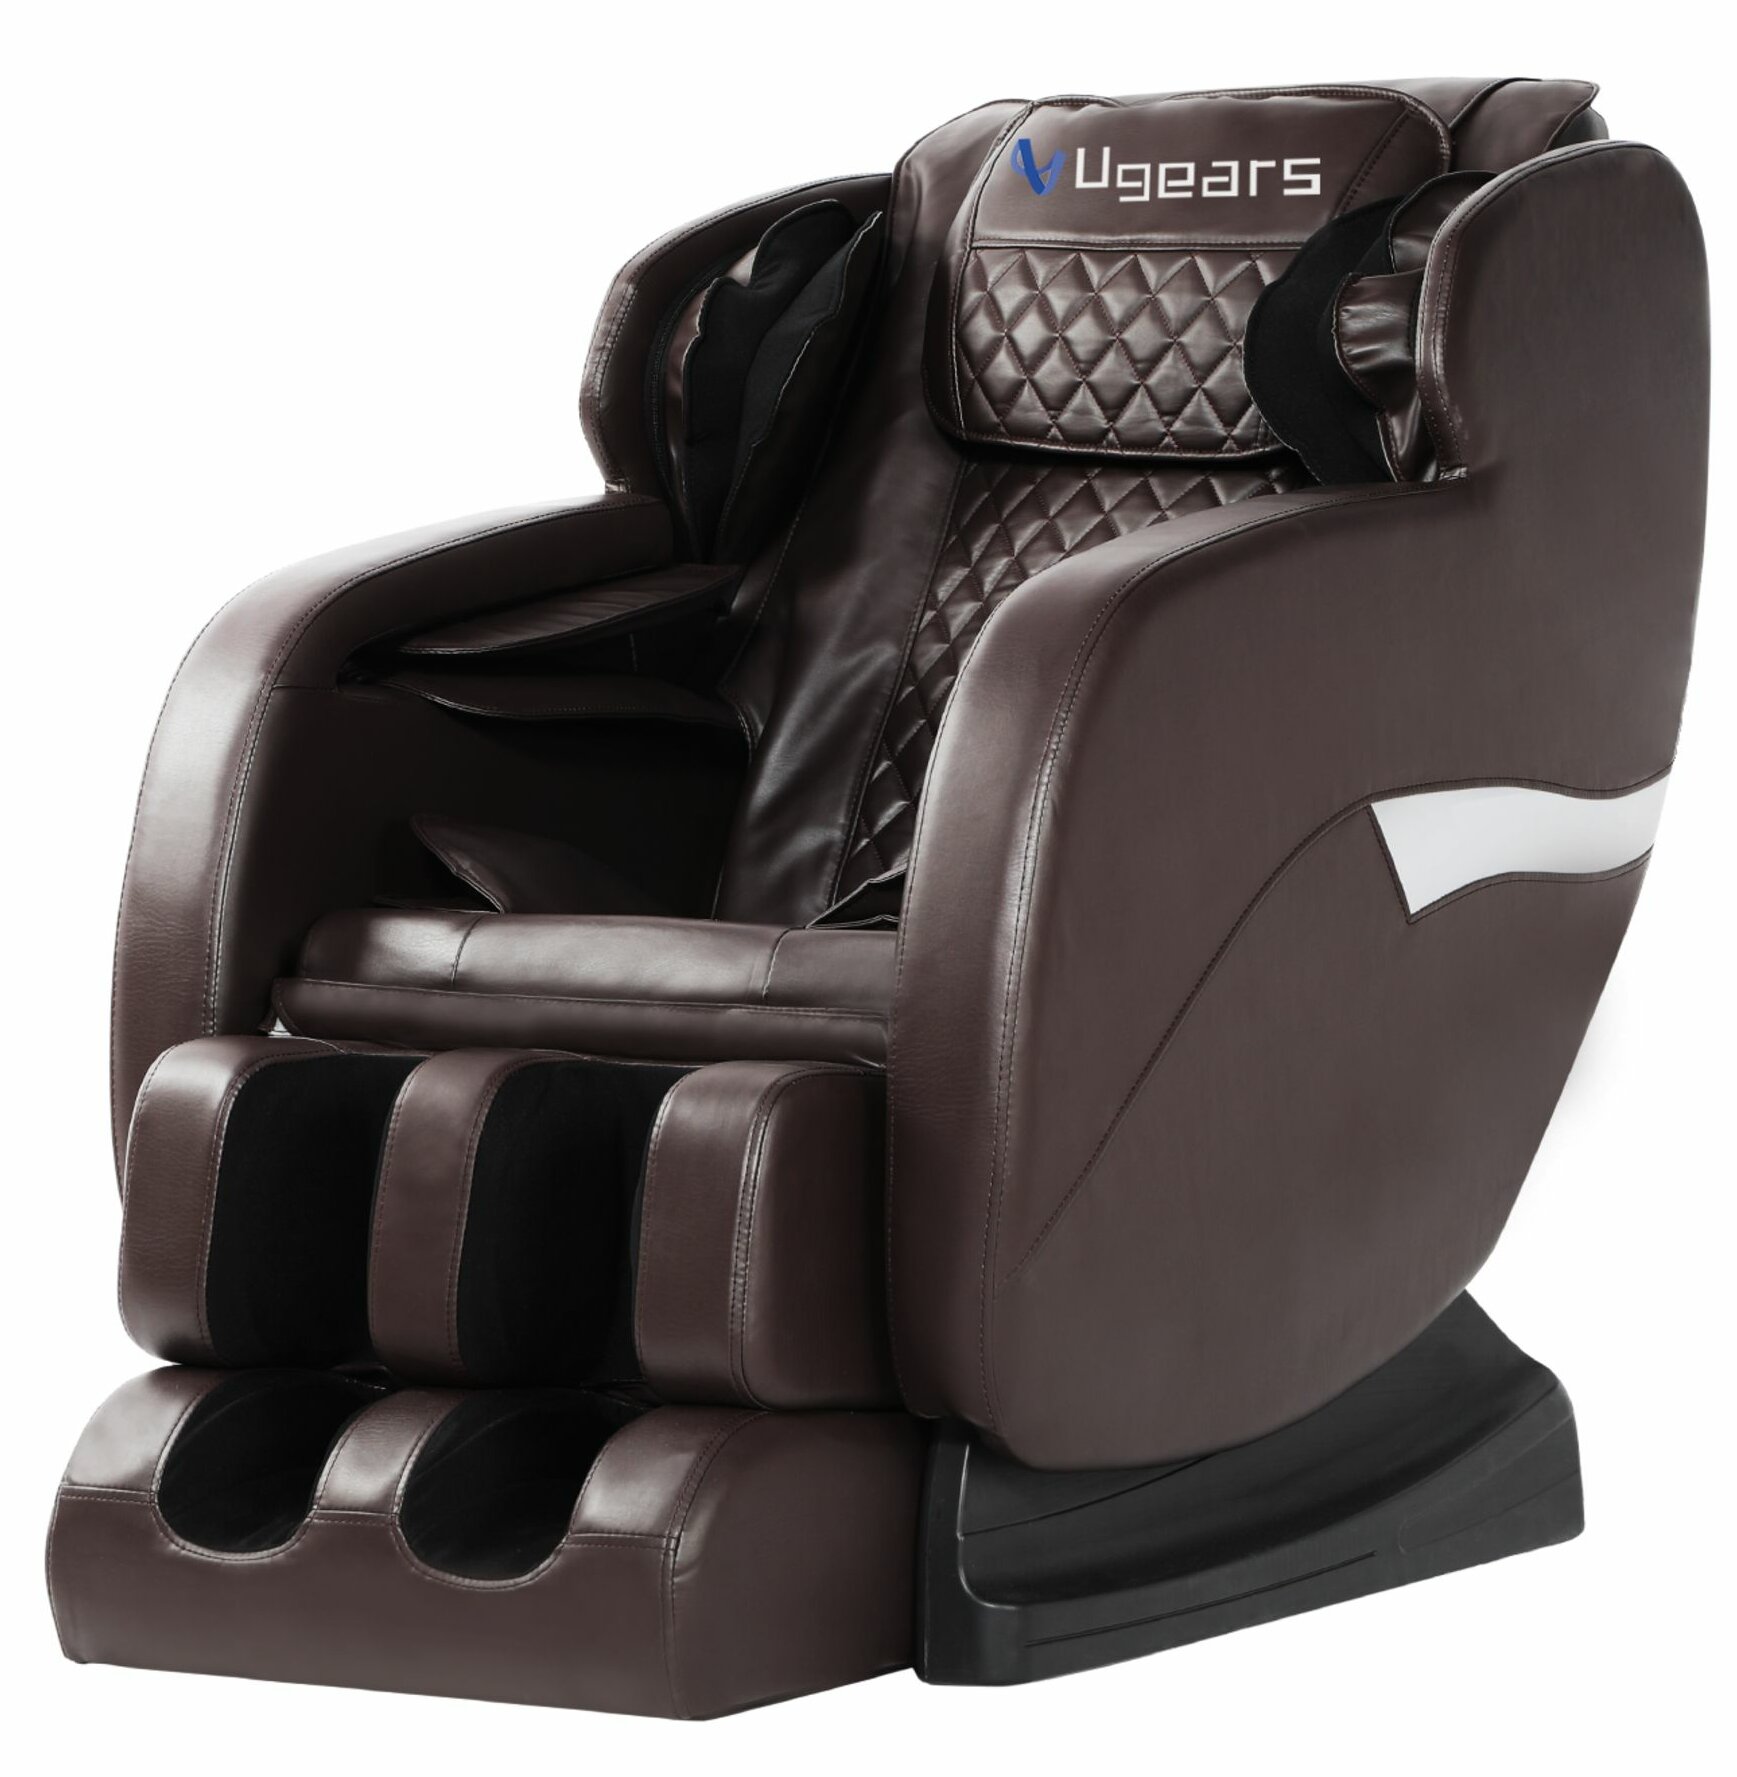 Rilassa Reclining Heated Full Body Massage Chair Reviews Wayfair